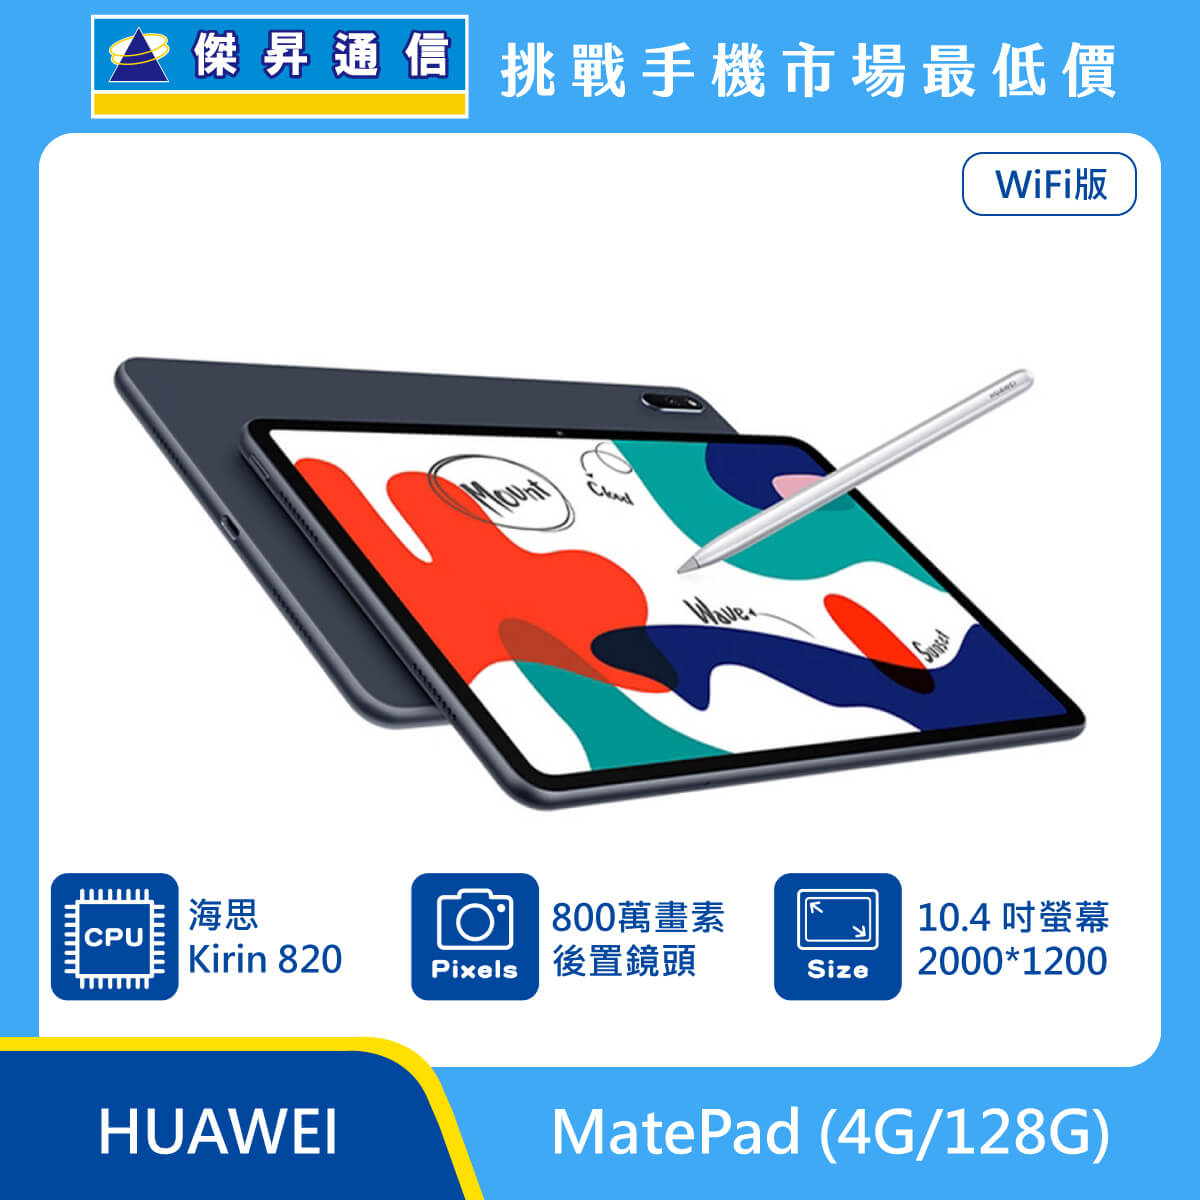 HUAWEI 平板 MatePad (4G/128G)